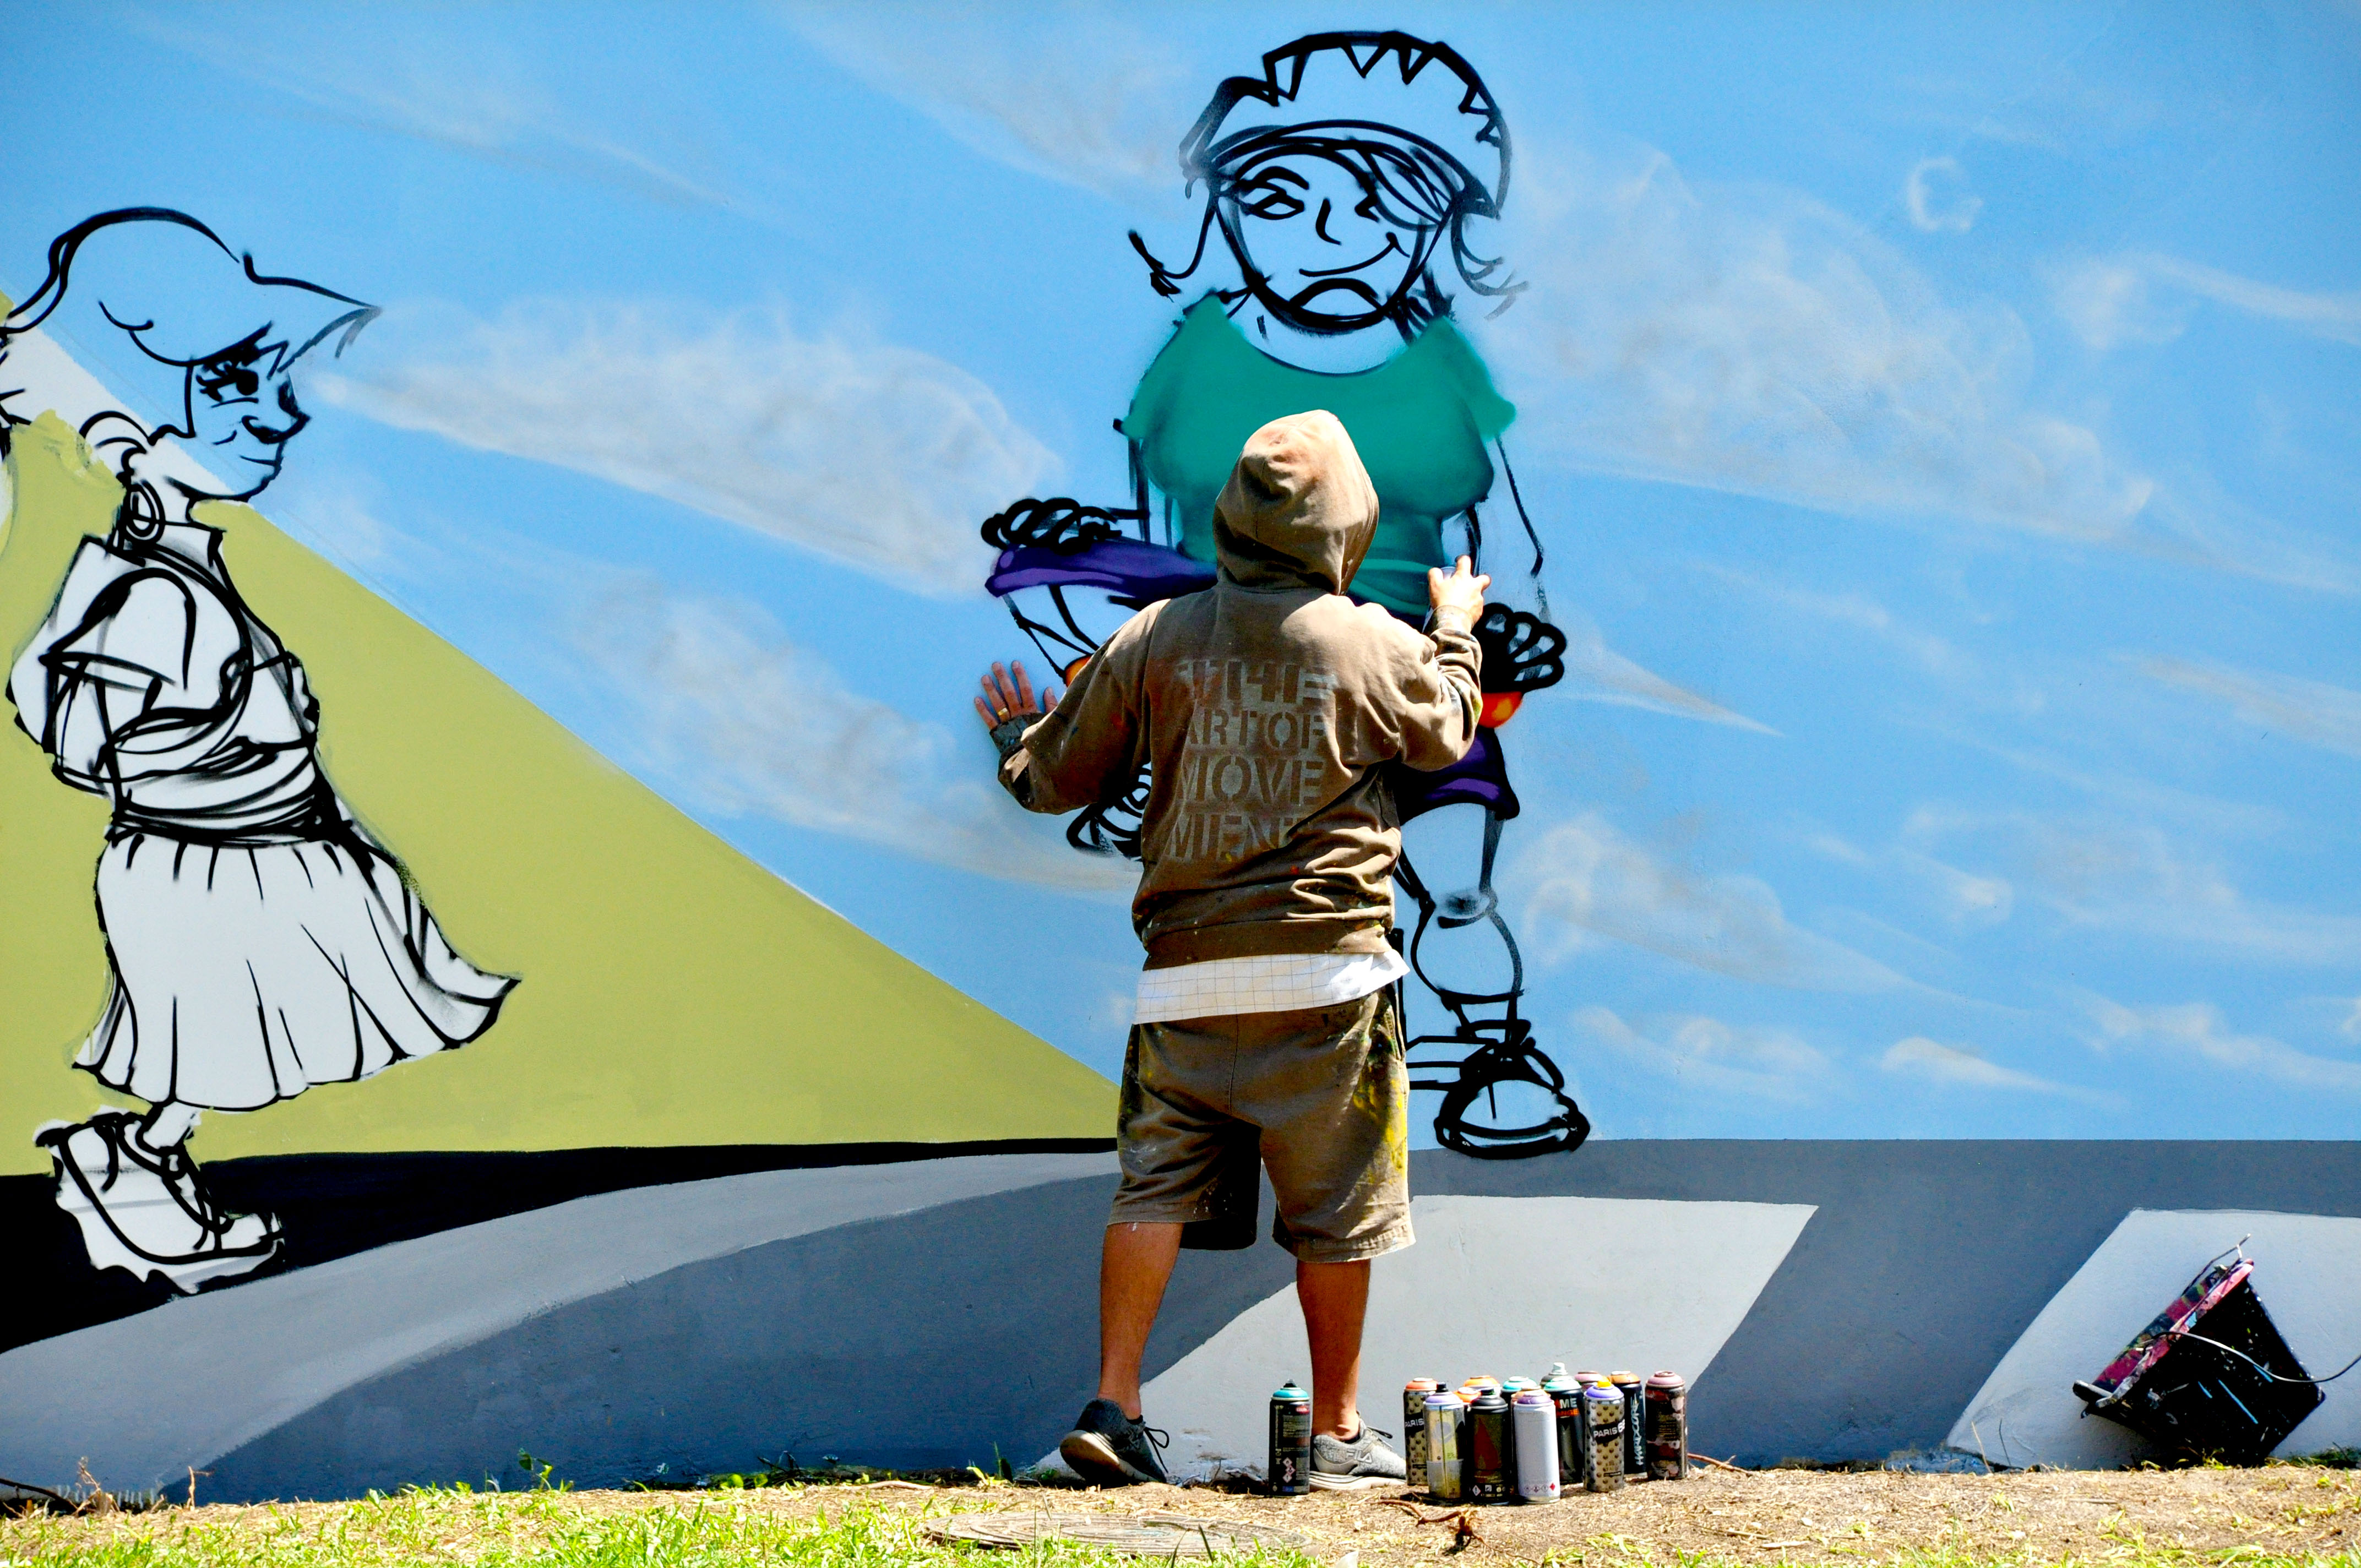  Detran inaugura mural de arte urbana sobre respeito no trânsito